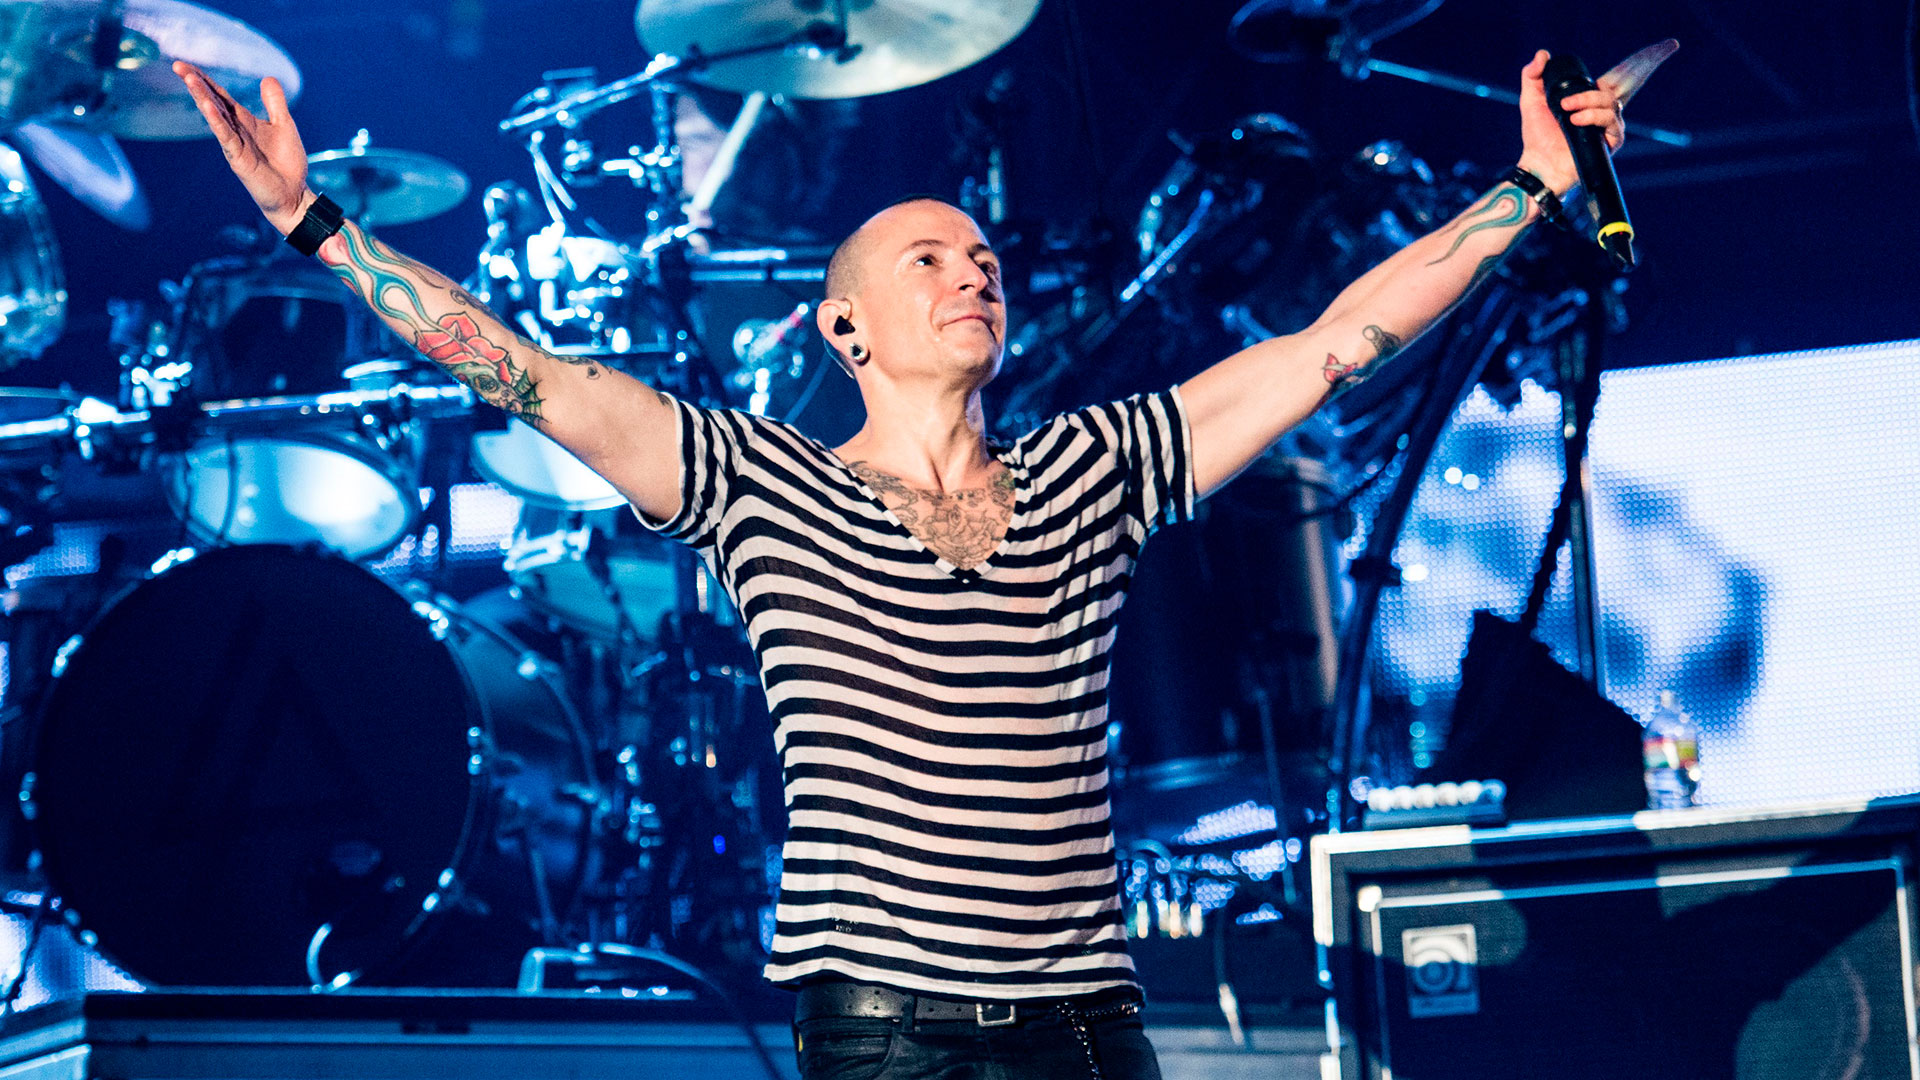 El vocal de Linkin Park ya había tenido múltiples intentos de suicidio (Foto: Shutterstock)